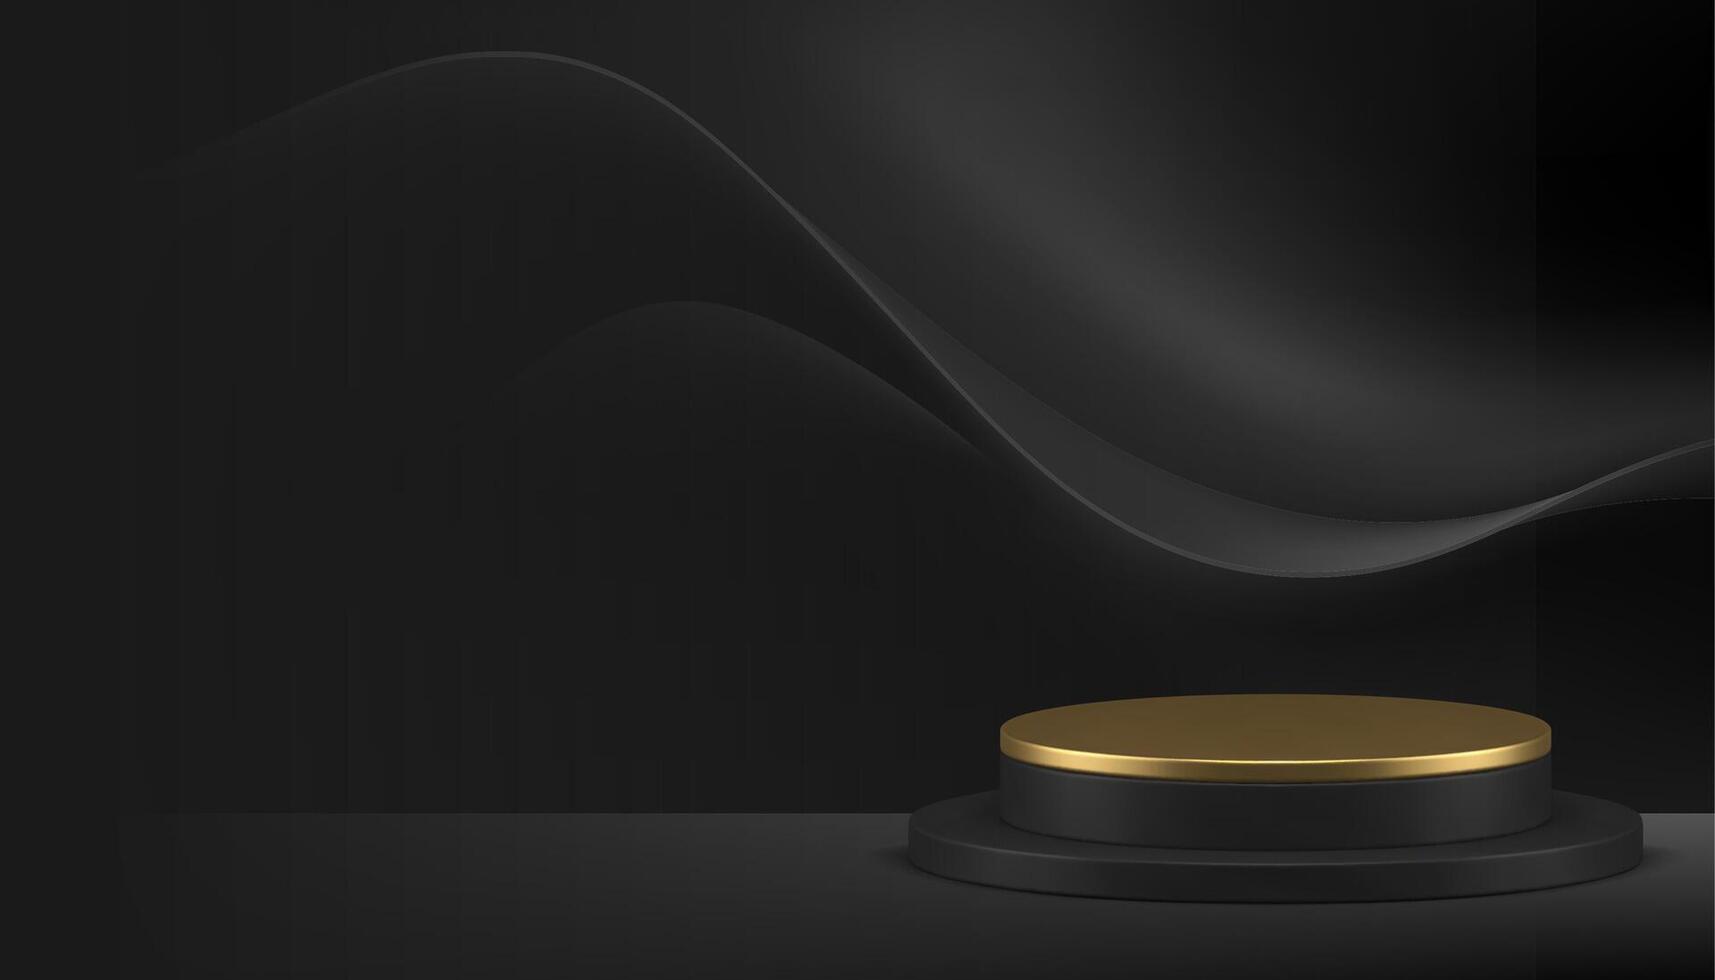 3d lusso cilindro podio piedistallo d'oro In piedi nero curvo onda parete sfondo realistico vettore